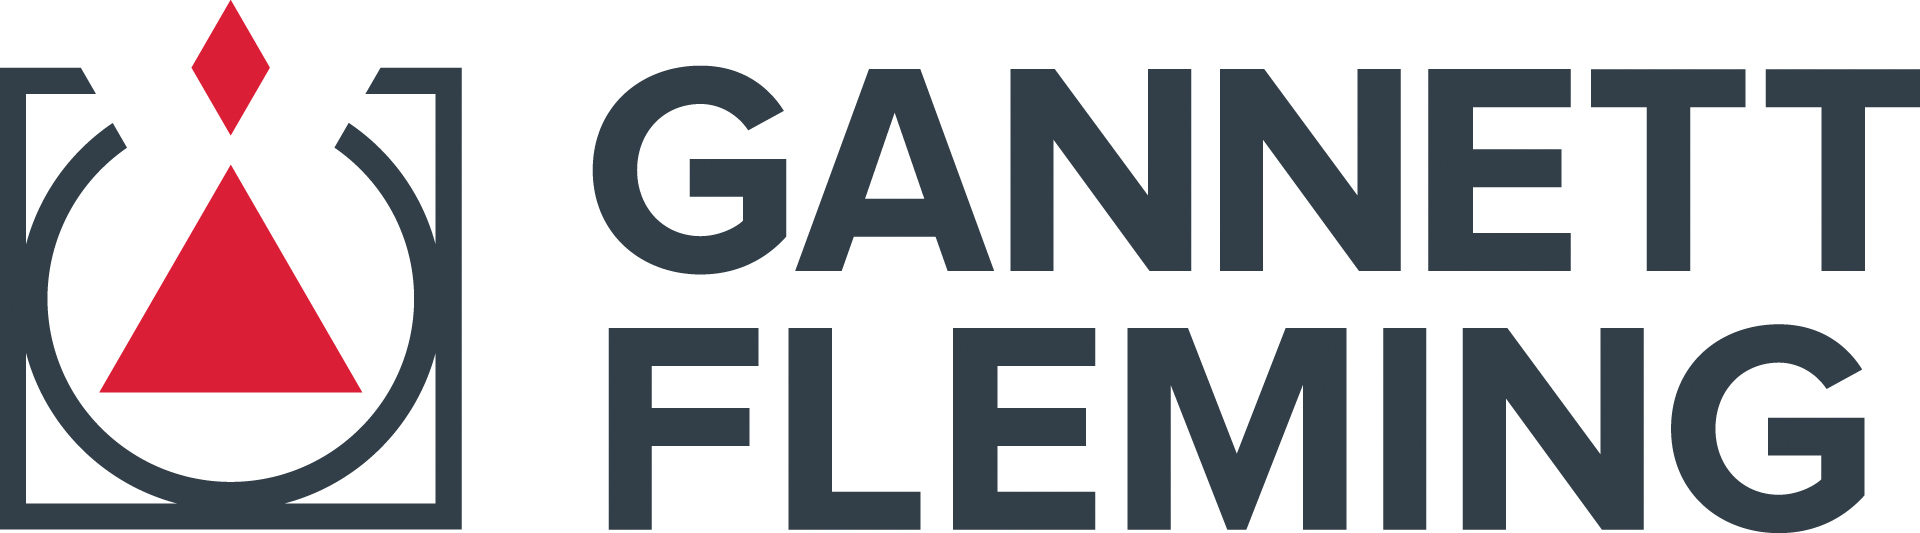 Gannett Fleming New Logo 2022